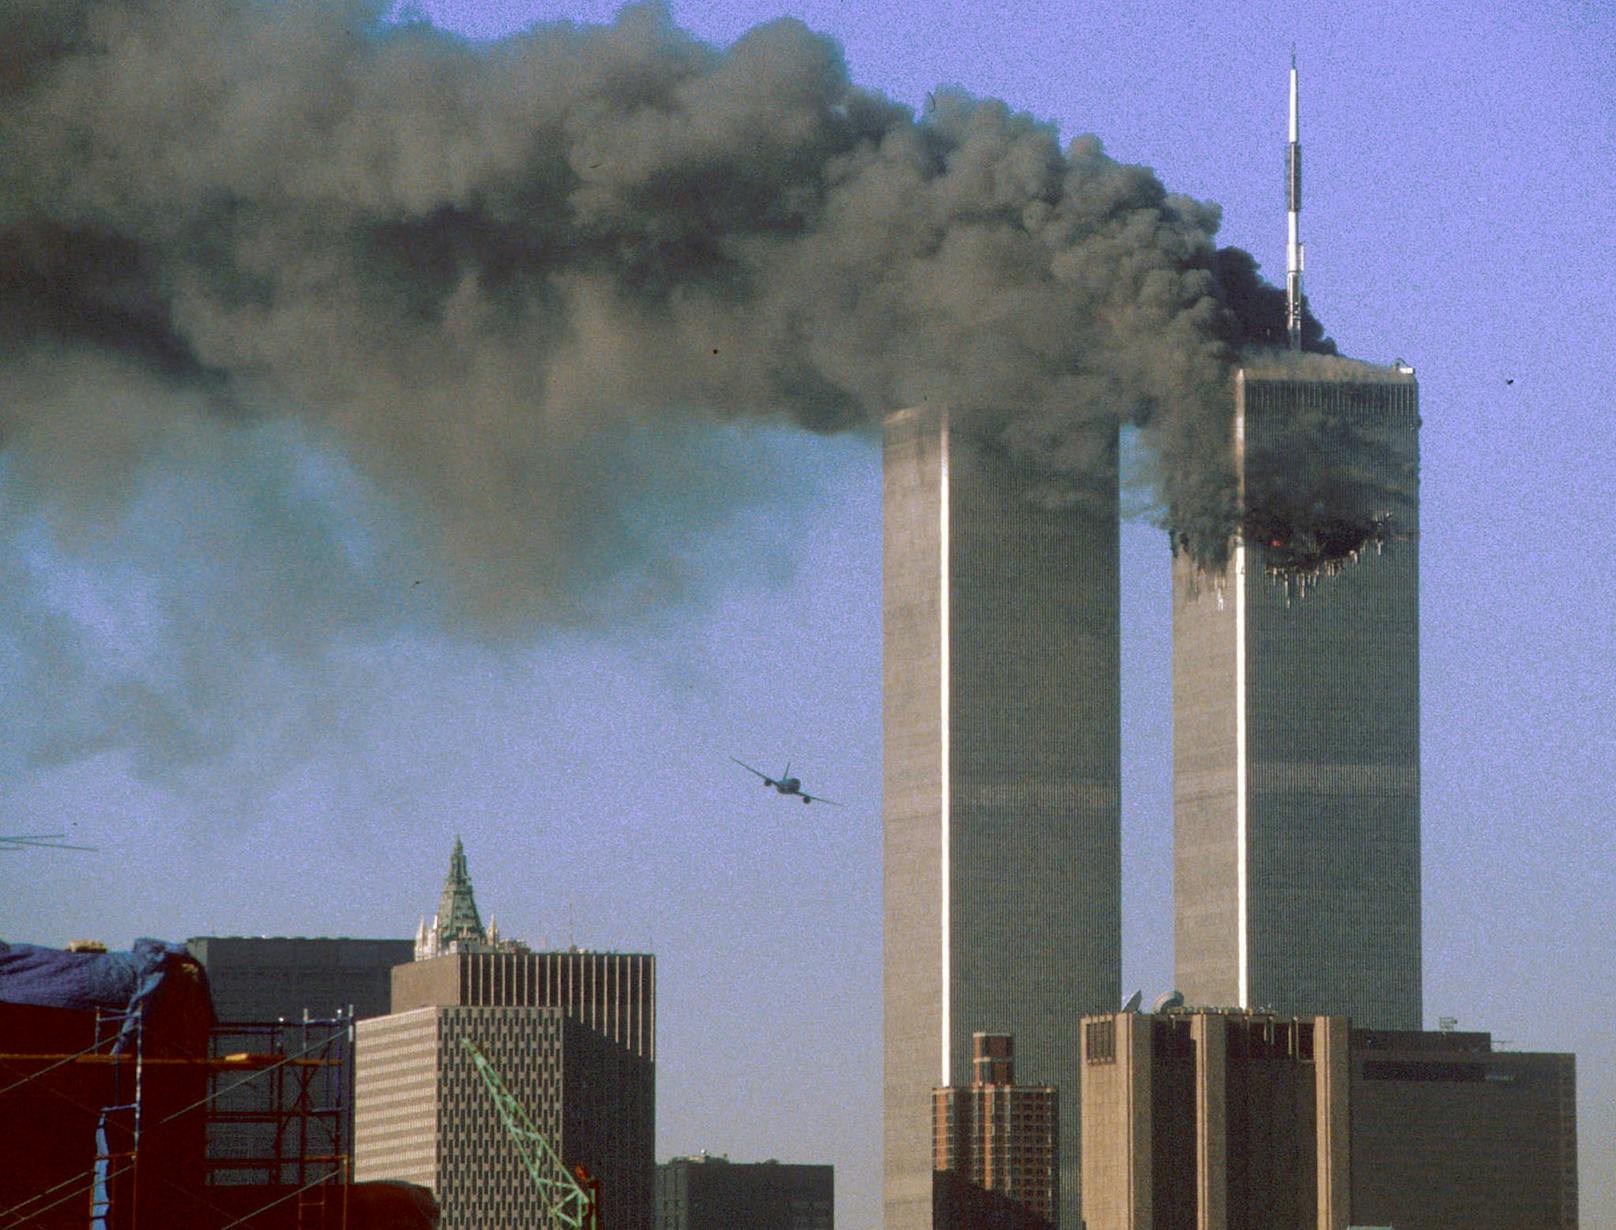 Durch das Abschneiden des Endes endet das Zitat mit einer Aussage, die auf die Terrorangriffe am 11. September 2001 anspielt und bei vielen Menschen entsprechende Erinnerungen wecken dürfte. Dass das nicht ganz zufällig passiert, …